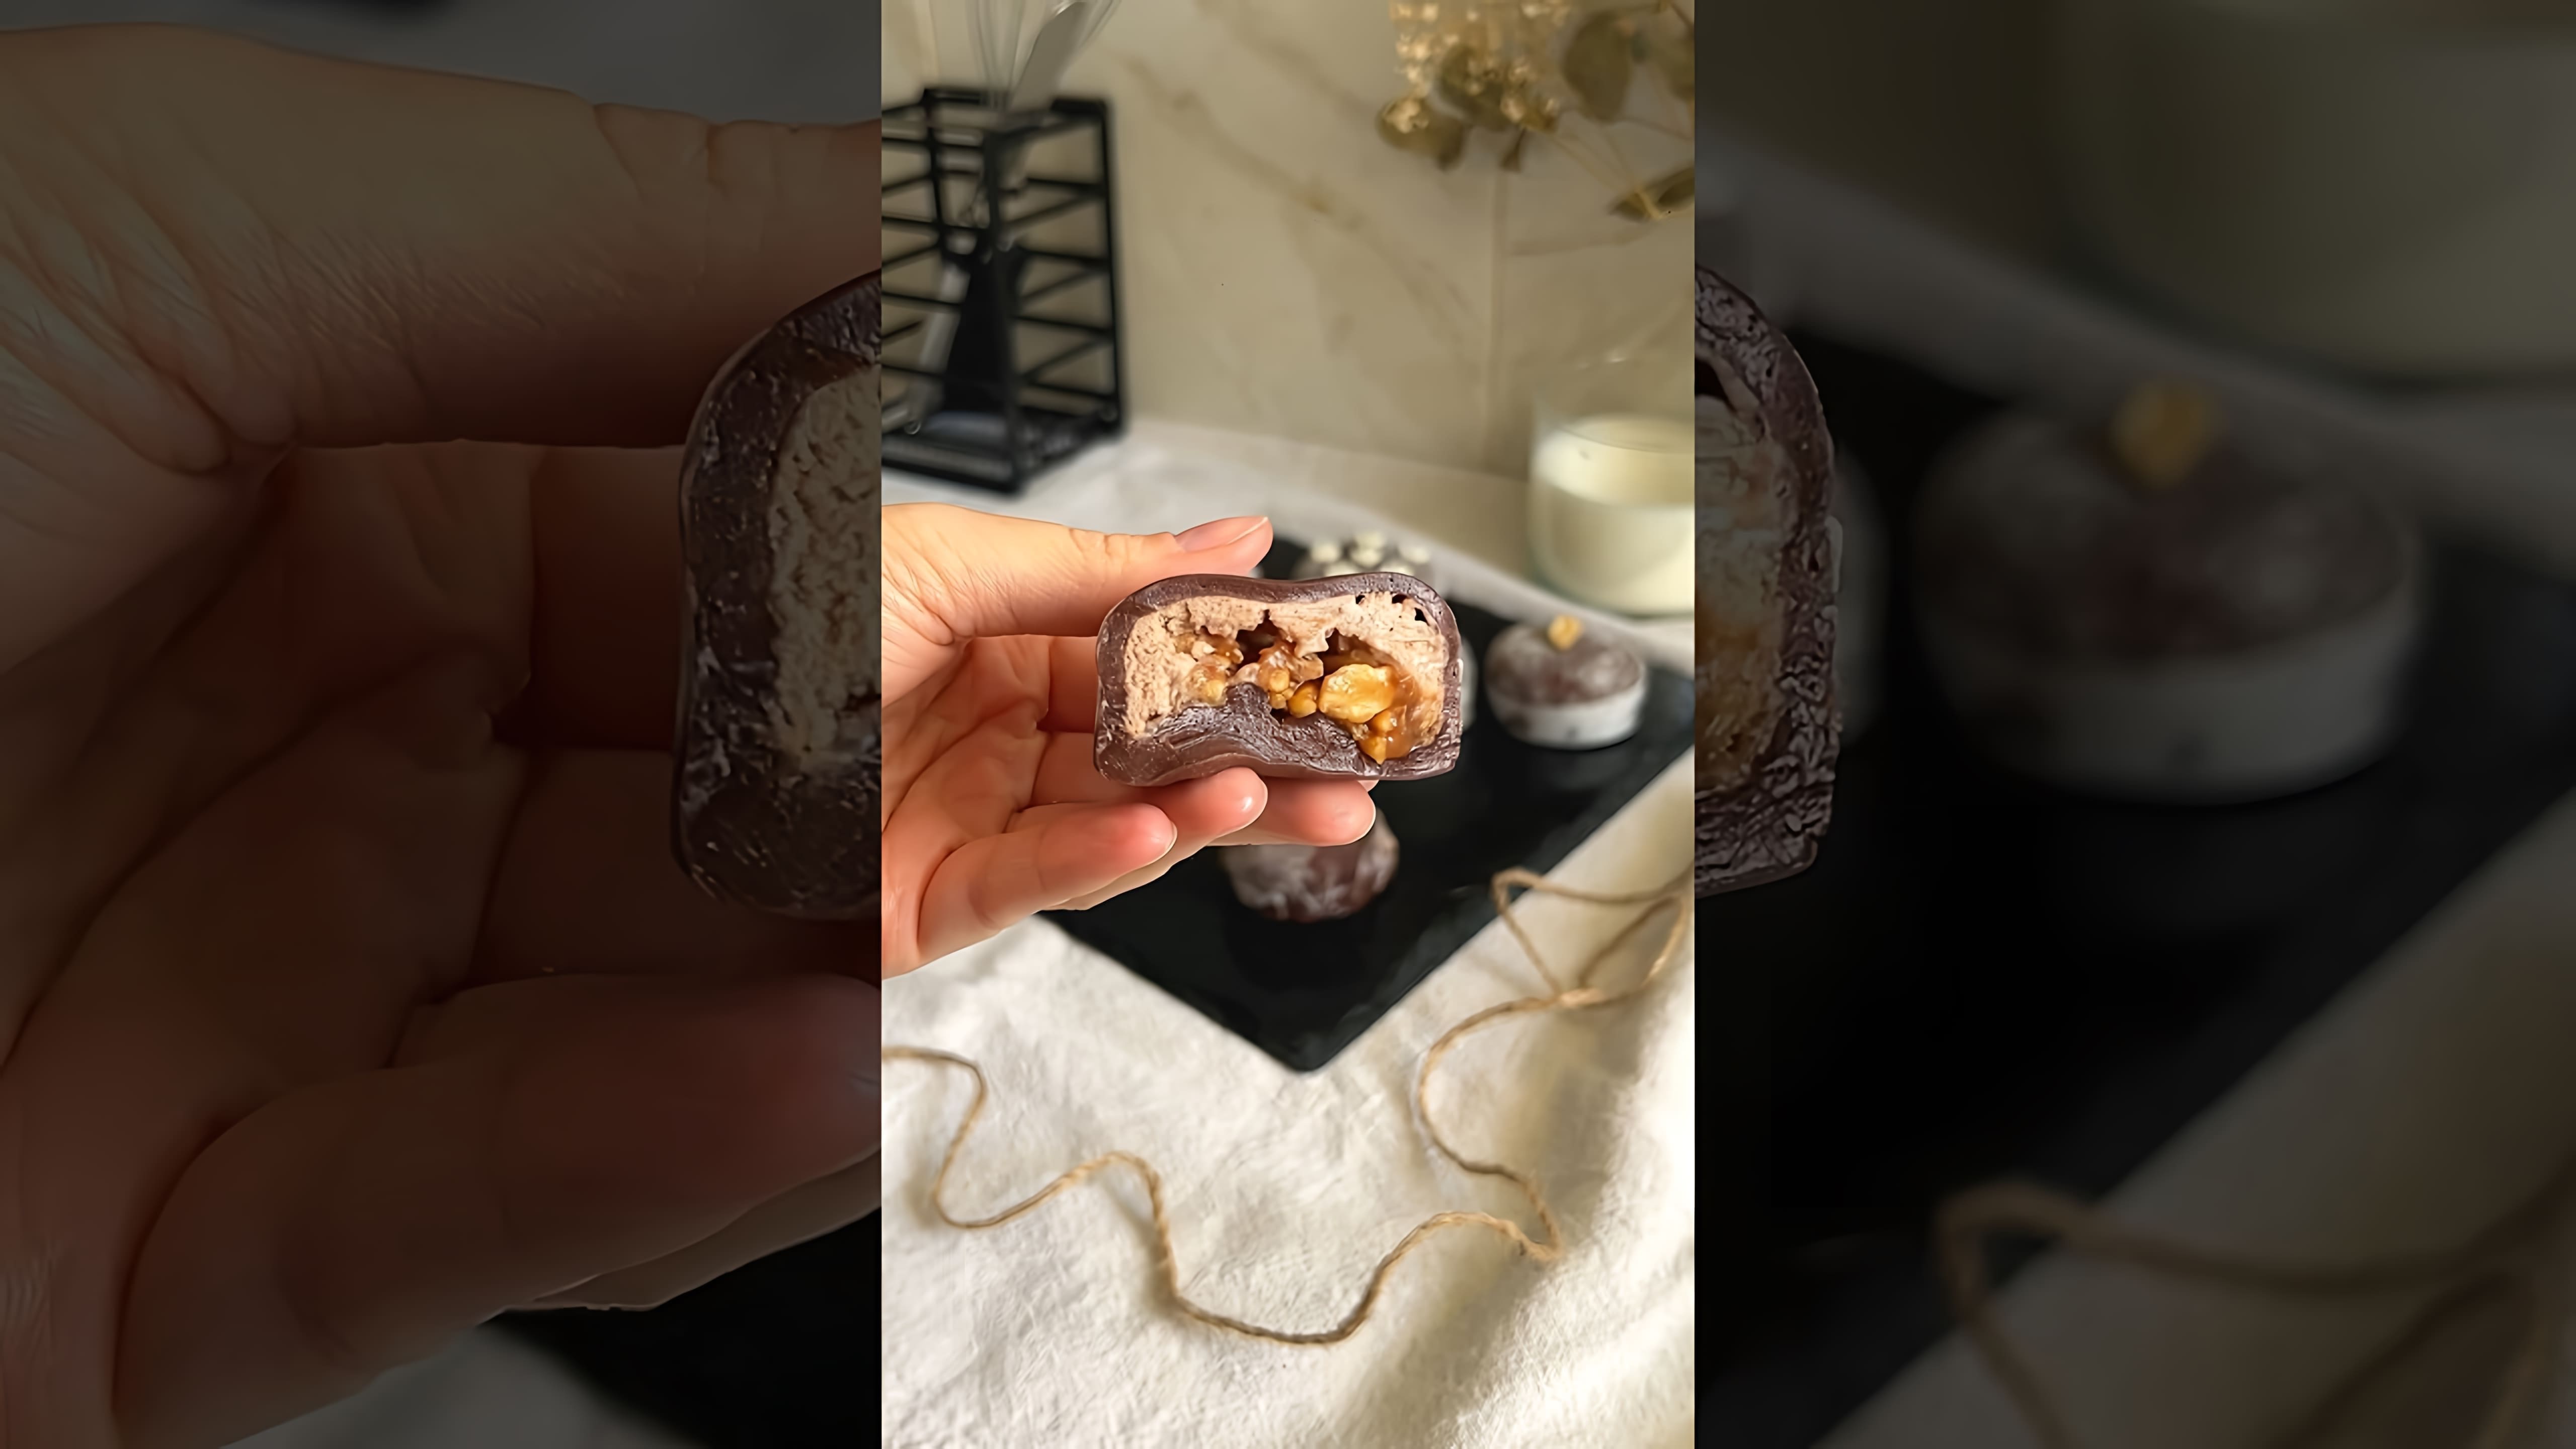 В этом видео демонстрируется рецепт приготовления моти со вкусом Сникерс без использования микроволновки и заморозки начинки